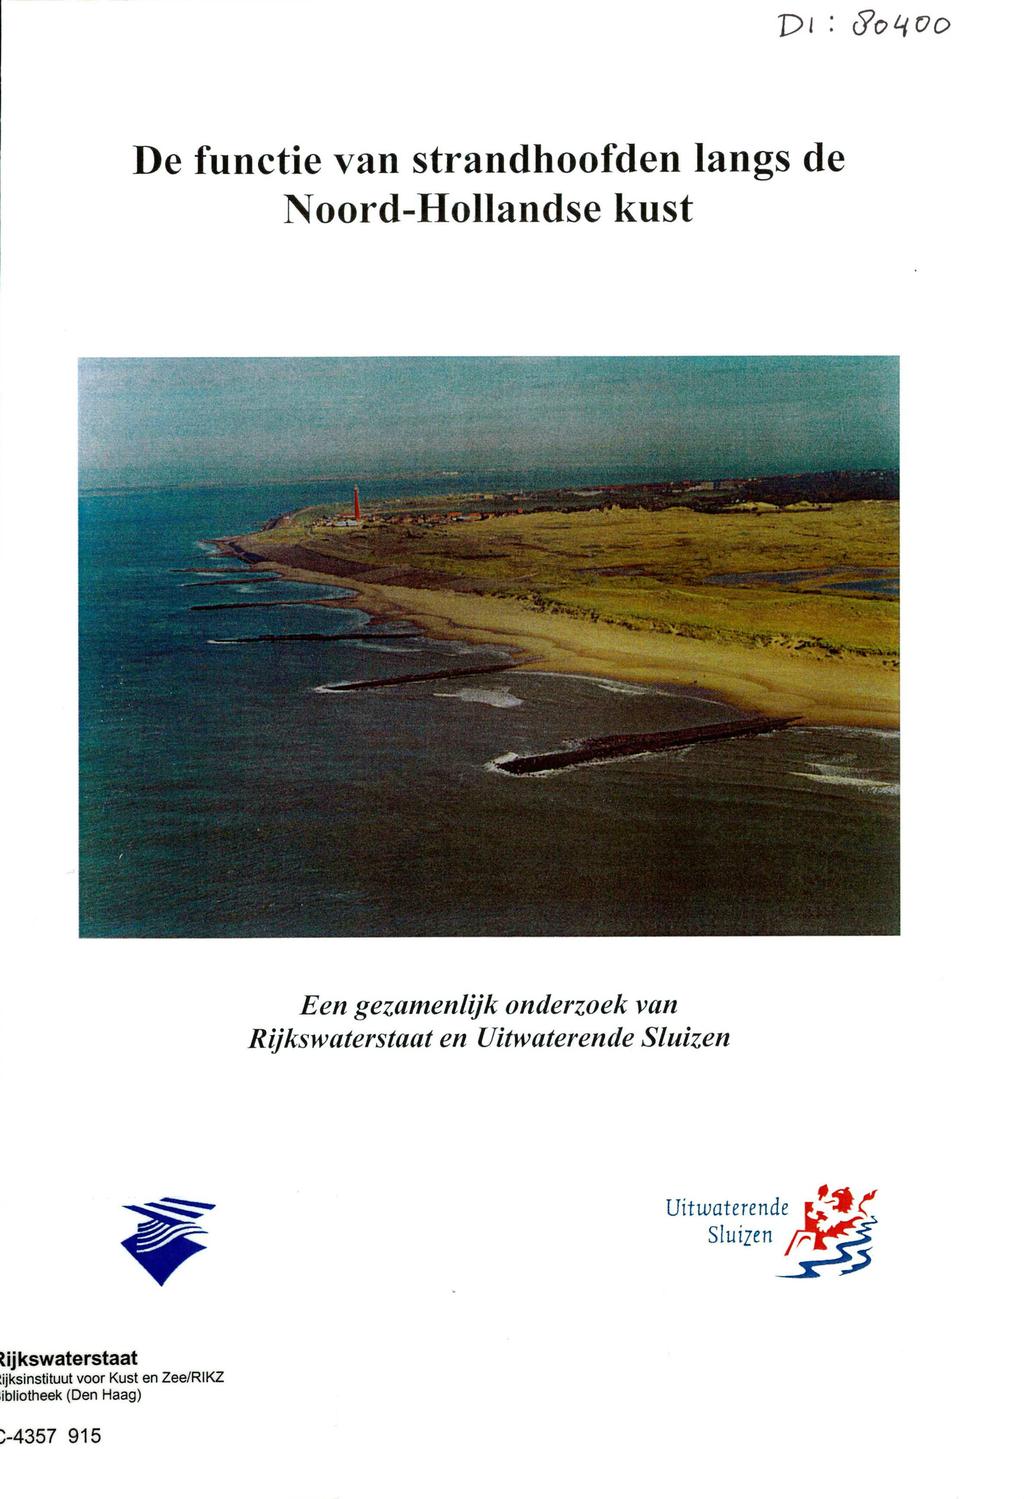 De functie van strandhoofden langs de Noord-Hollandse kust - -. - -! 4o_.-.- - -. --..., - -.